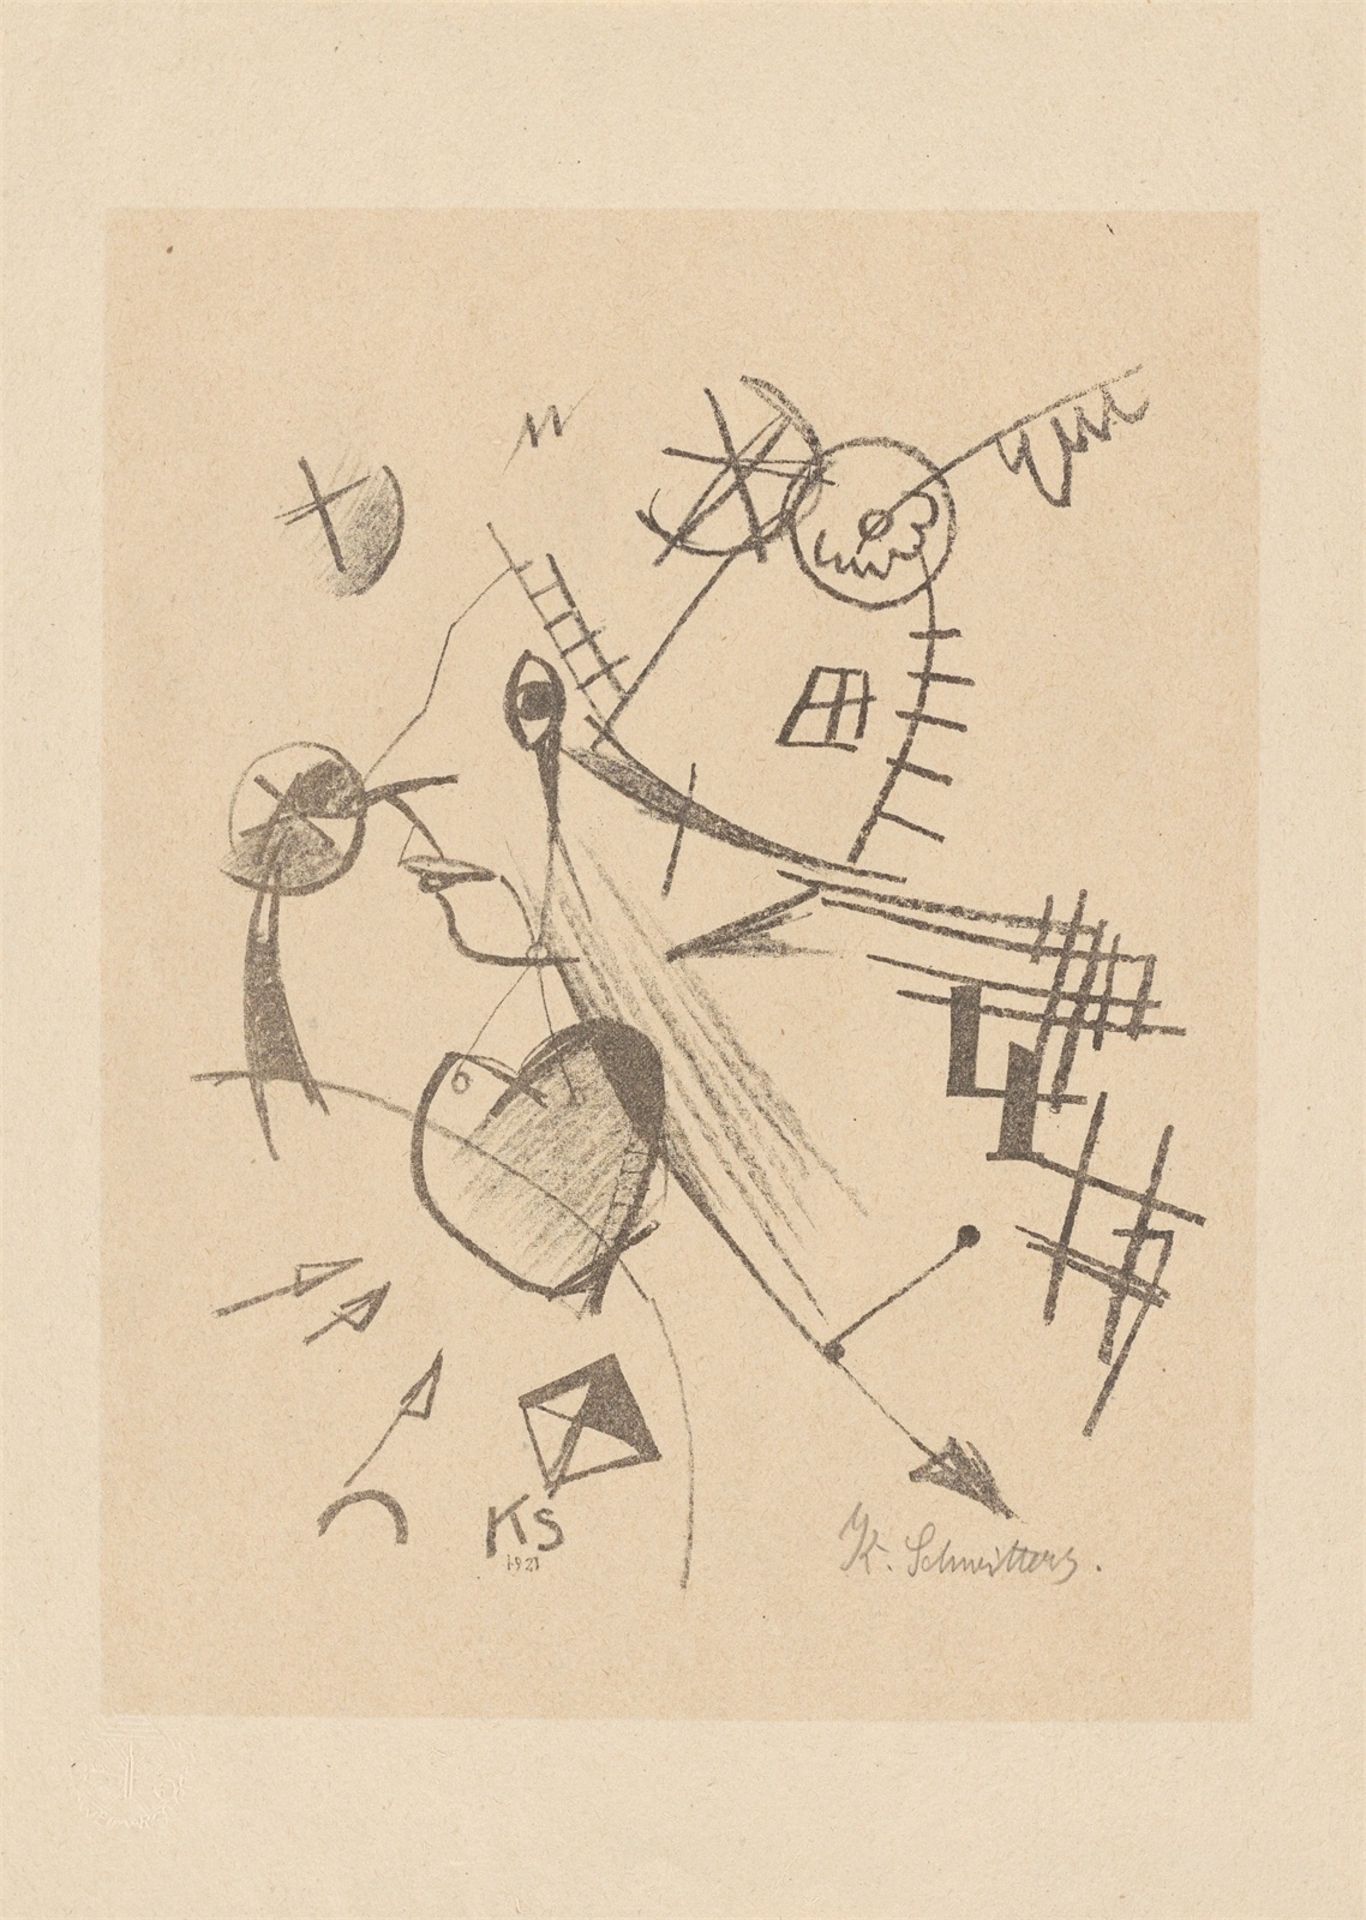 Kurt Schwitters. ”Komposition mit Kopf im Linksprofil”. 1921